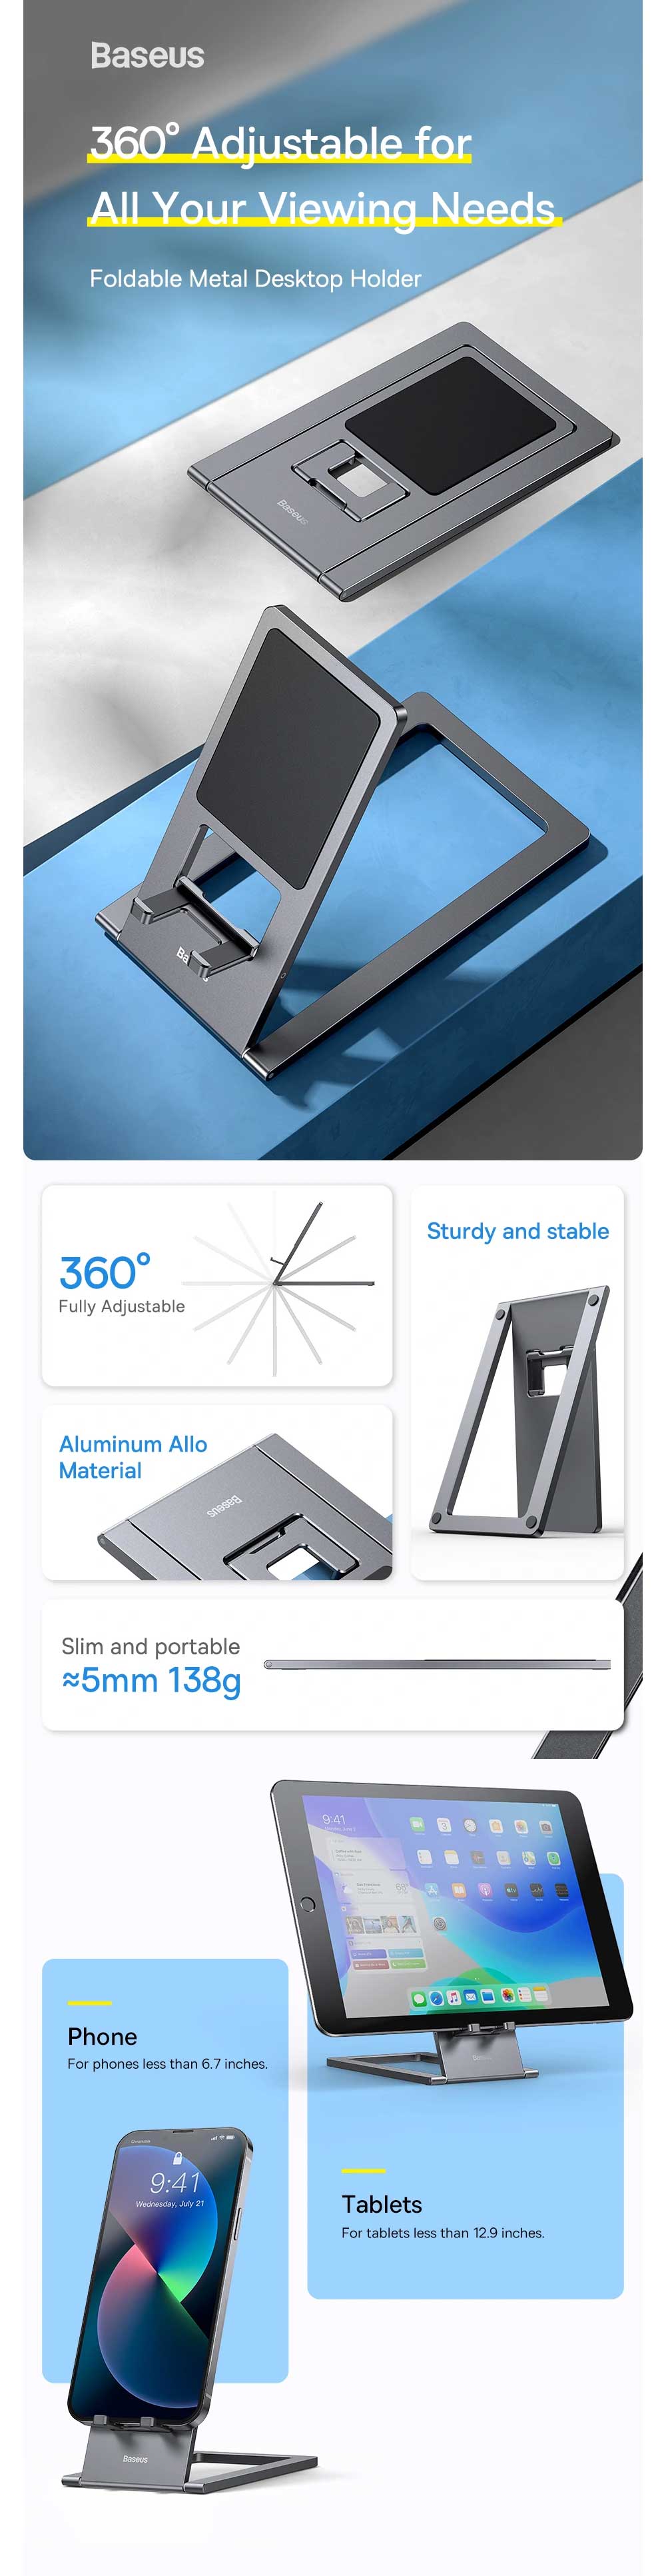 Baseus Foldable Metal Desktop Phone and Tablet Holder 5